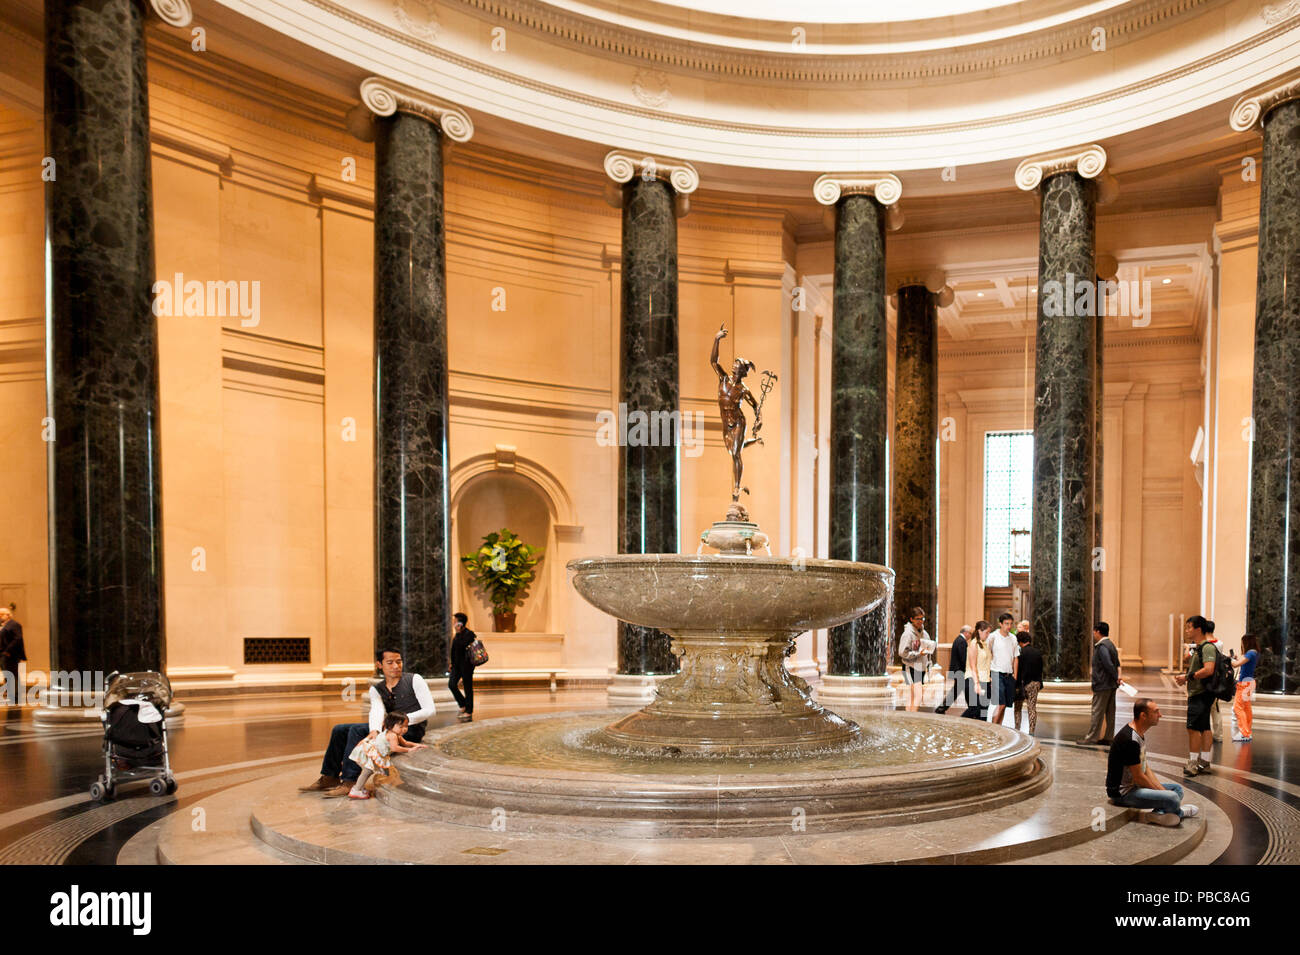 WASHINGTON, Etats-Unis - Sep 24, 2015 : Hall de la galerie nationale d'art, un musée d'art national à Washington, D.C., National Mall, entre les 3e et 9e st Banque D'Images